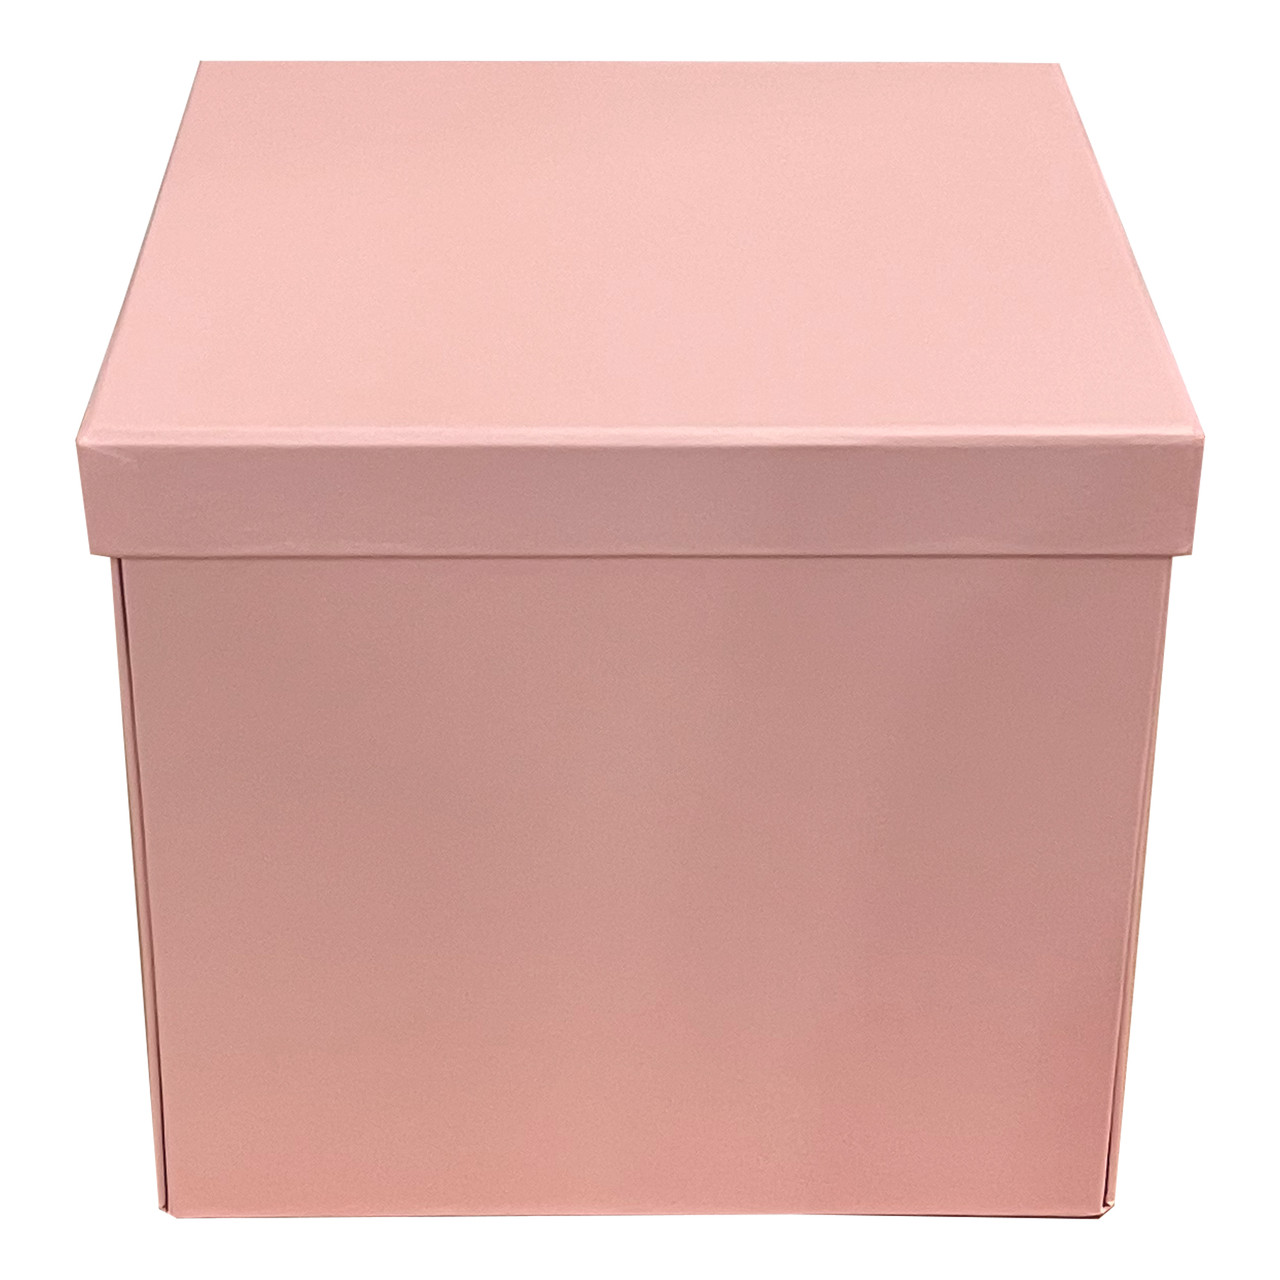 8.75 Square Double Level Surprise Box - Pink - LO Florist Supplies